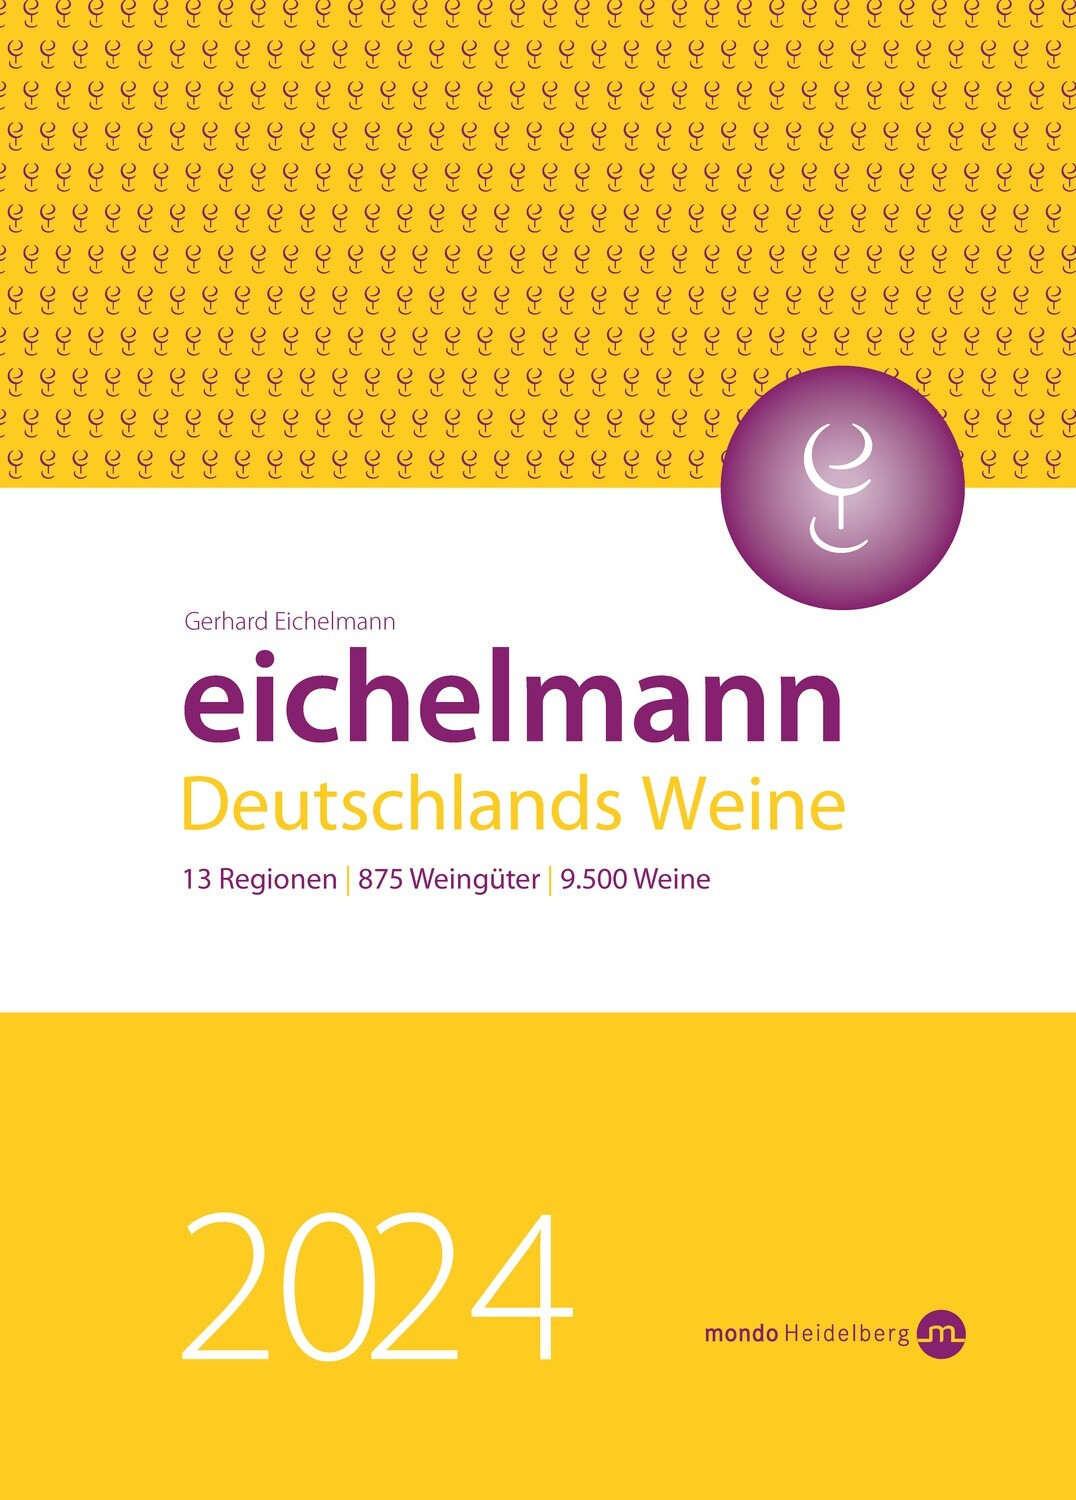 EICHELMANN 2024 - Deutschlands Weine + APP im Bundle